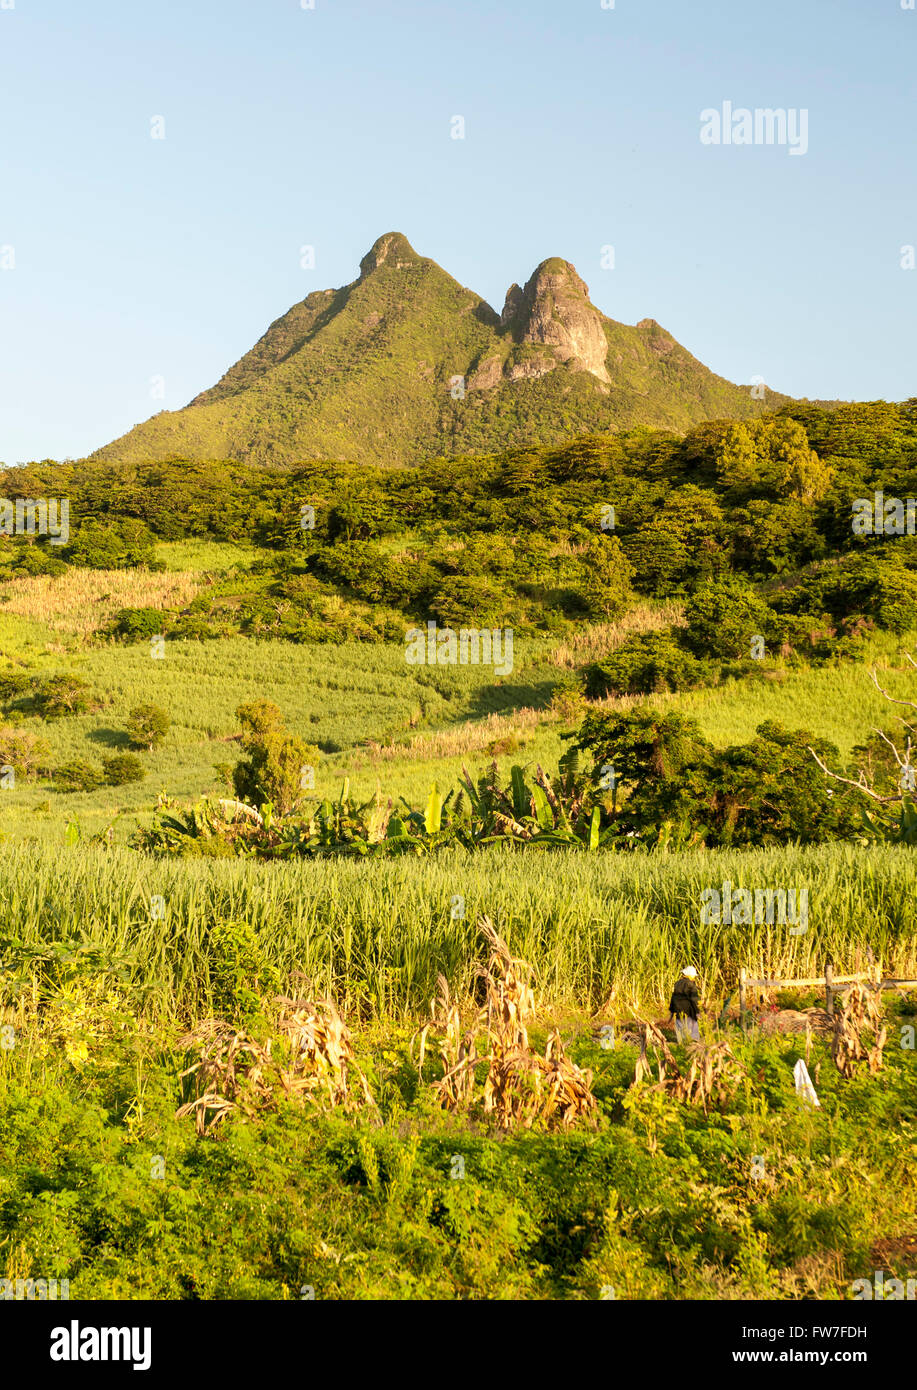 East coast scenery on the island of Mauritius. Stock Photo